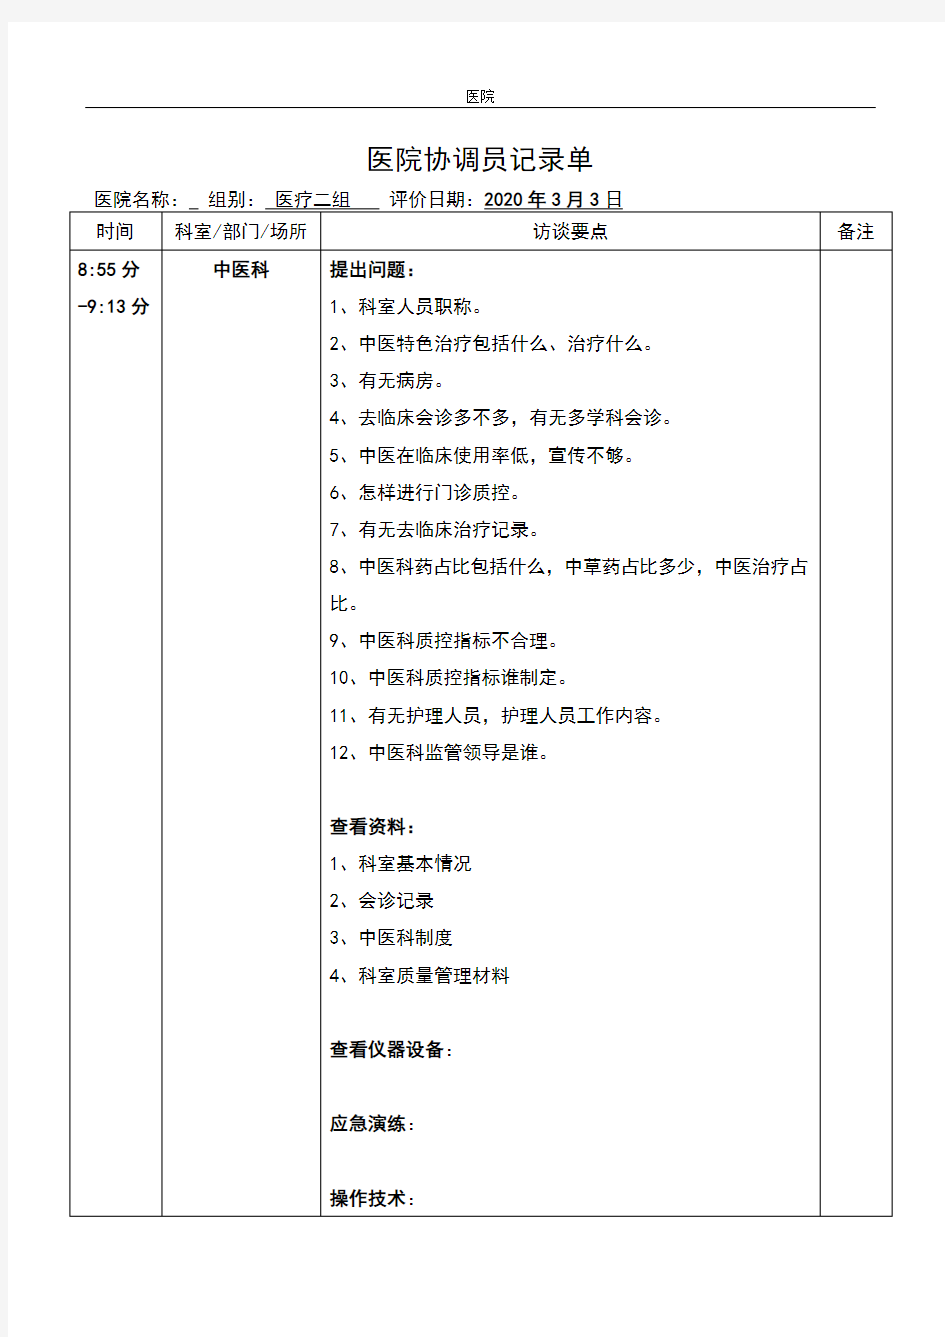 中医科评审记录表格(1)